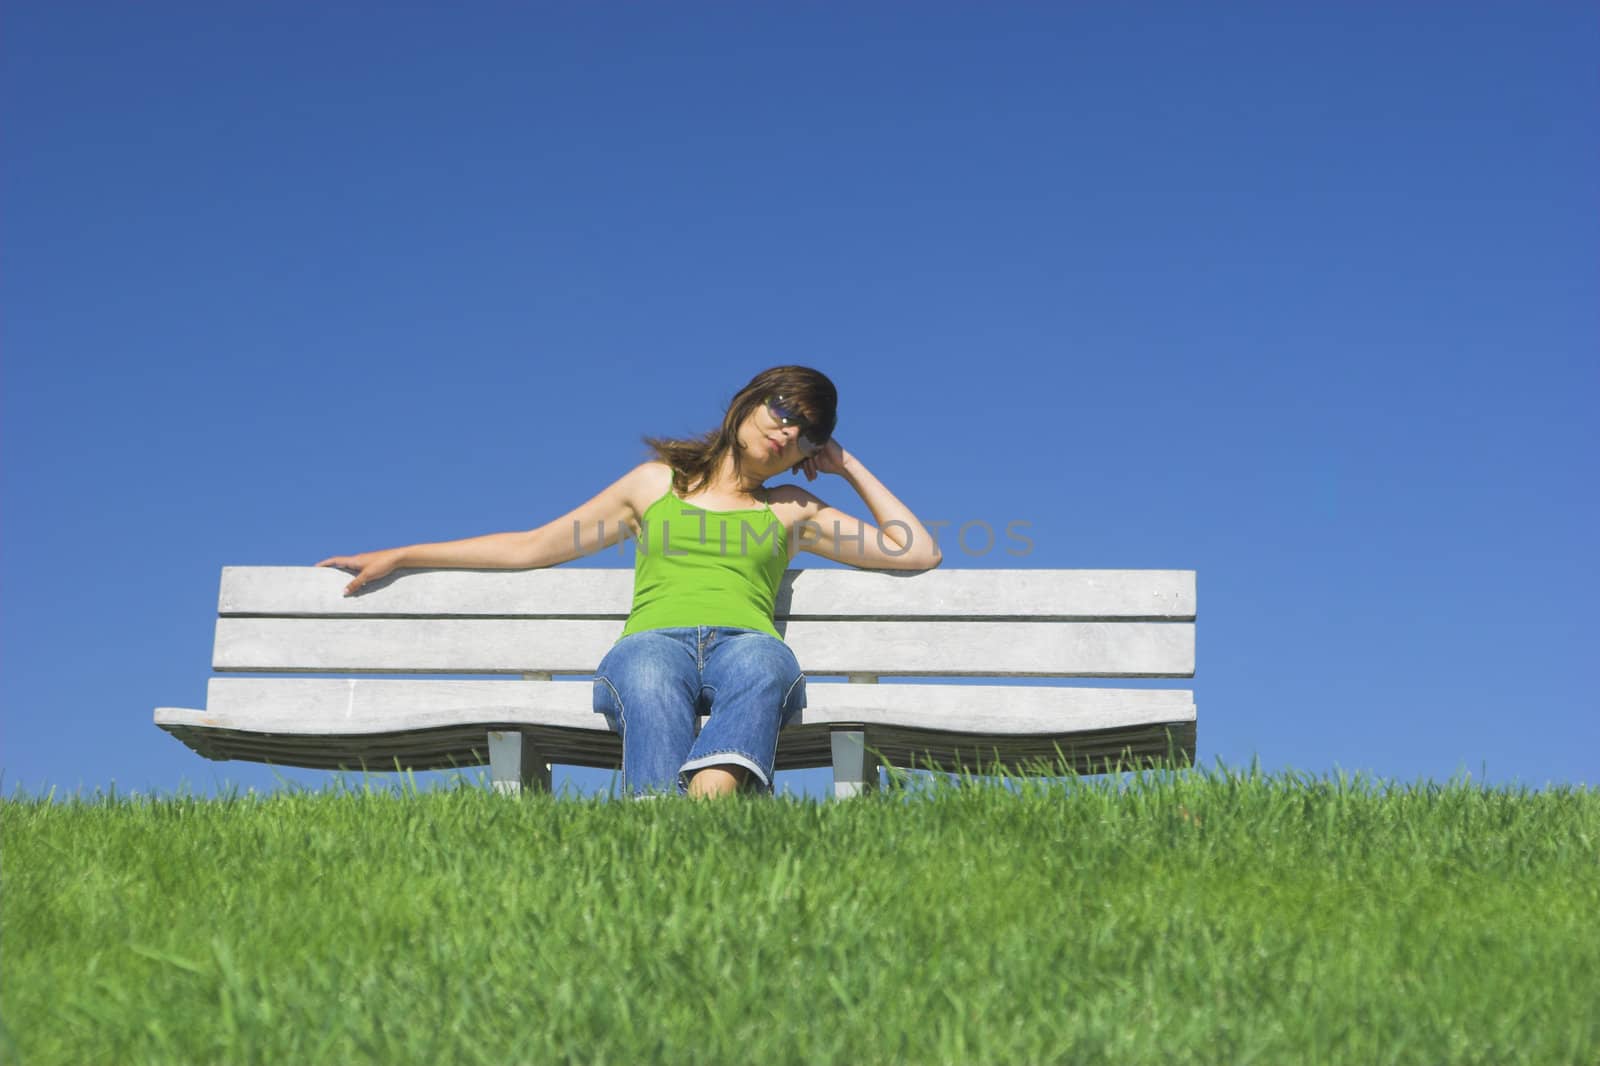 Beautiful woman relaxing on a beautiful green field